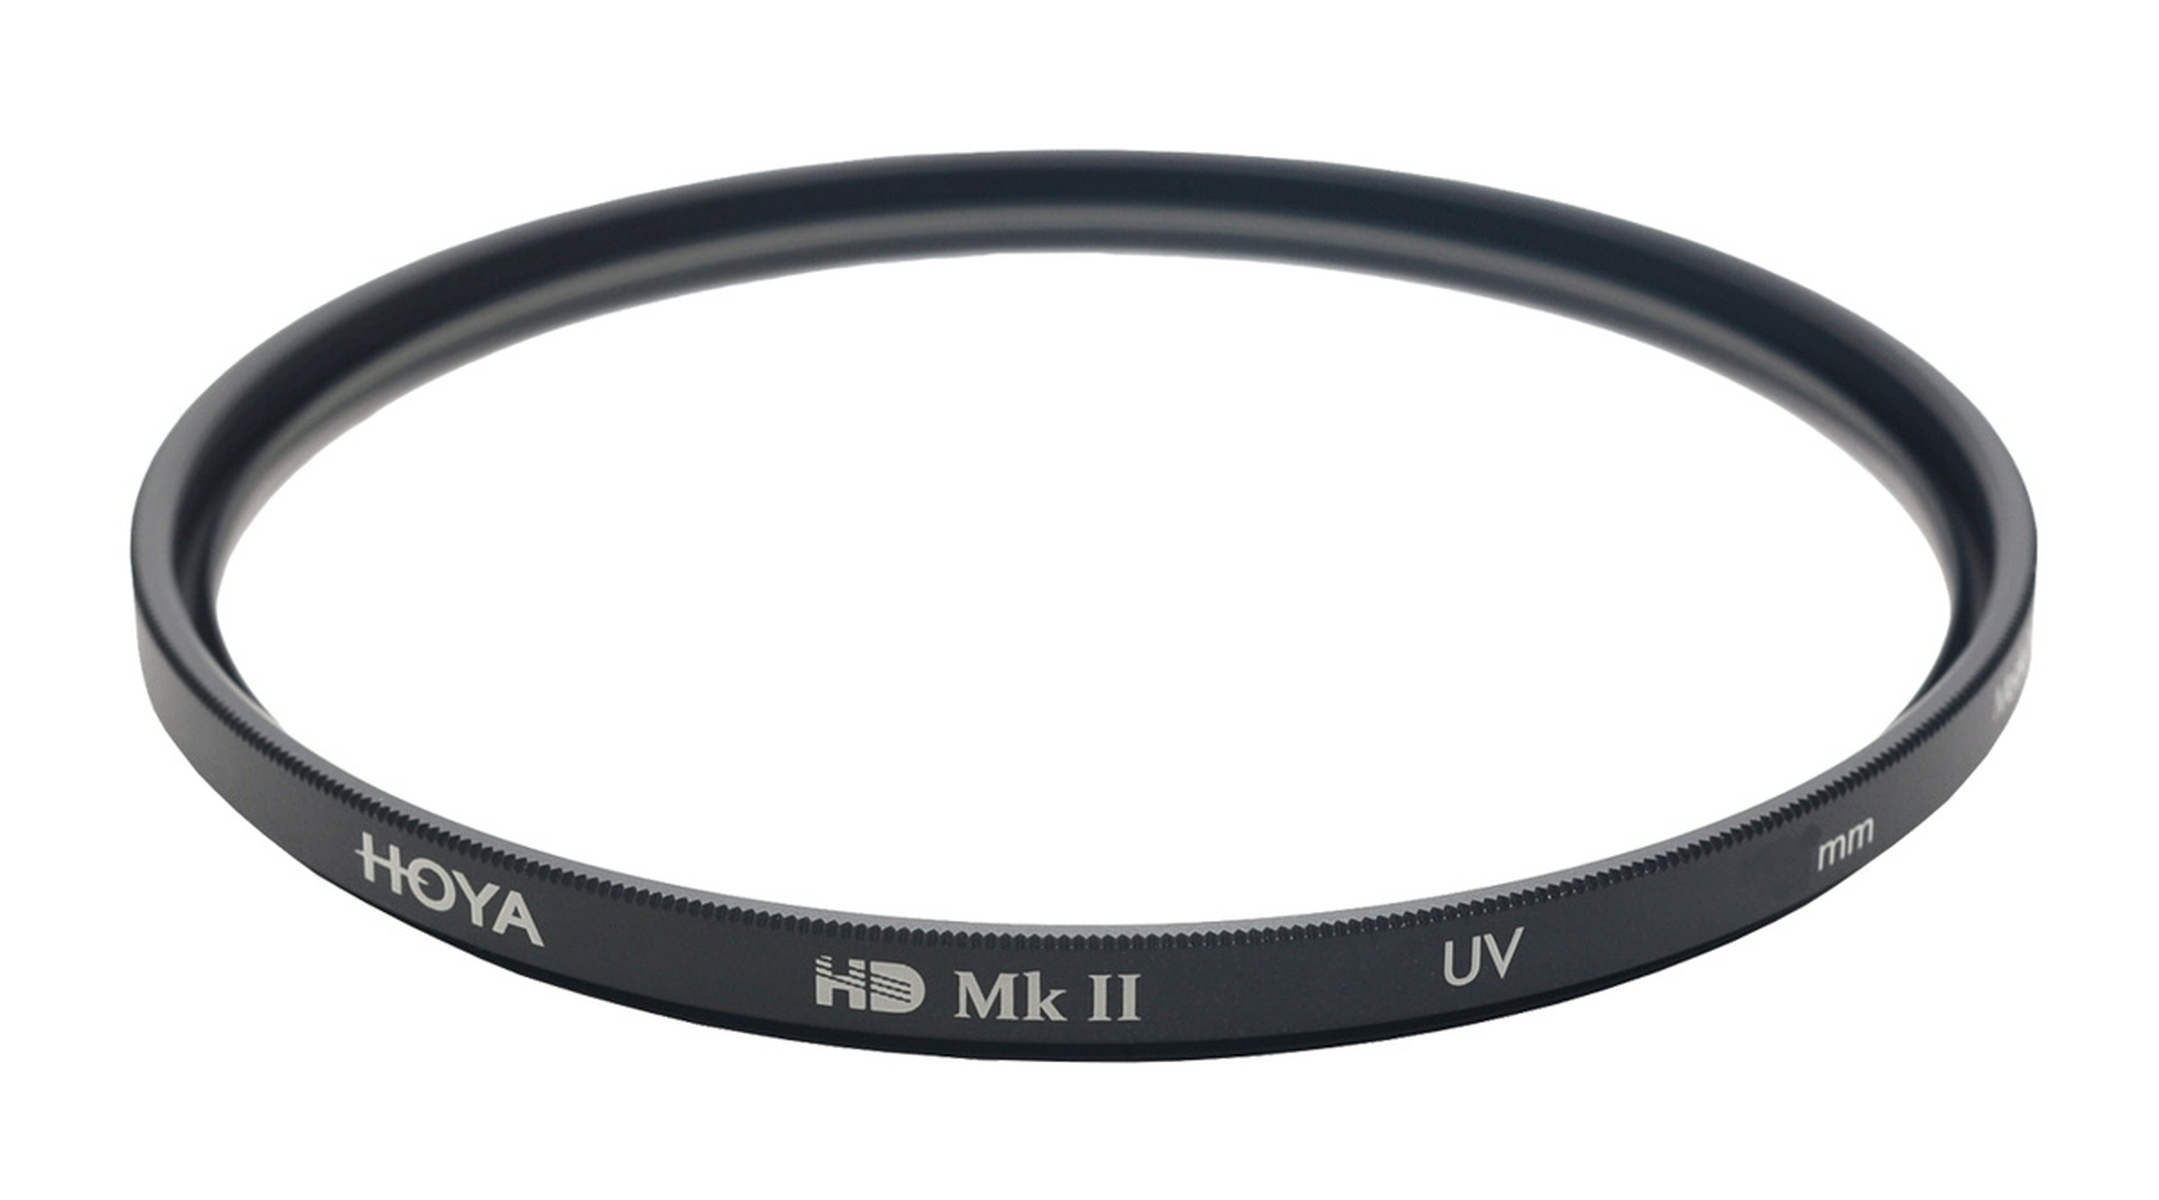 Filter HD UV MkII UV HOYA 62 62mm Filter mm